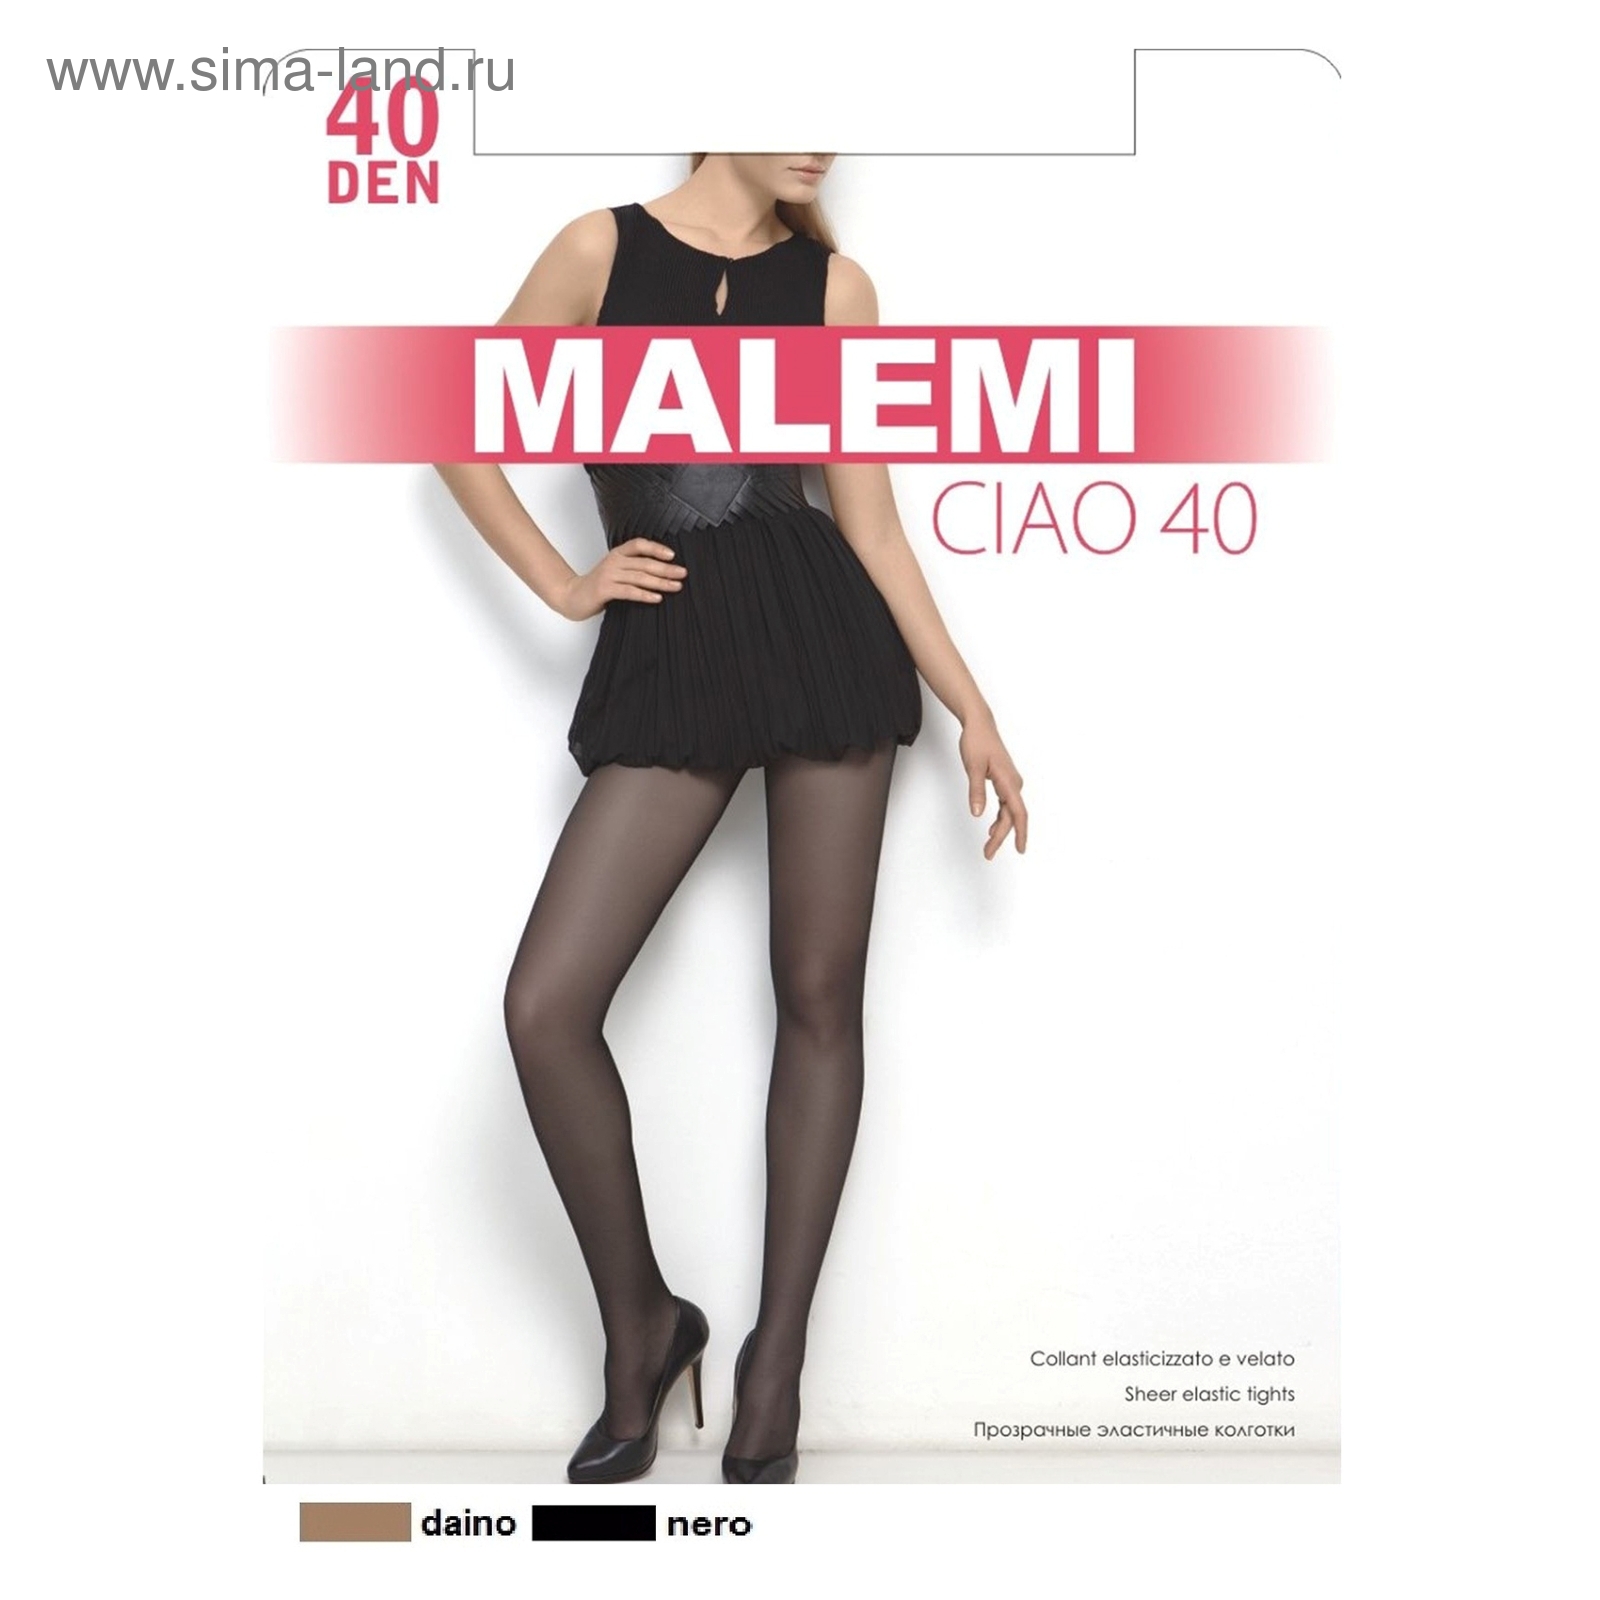 Купить Колготки женские капроновые, MALEMI Ciao 40 ден, цвет чёрный (nero),  размер 4 (880601) в Крыму, цены, отзывы, характеристики | Микролайн